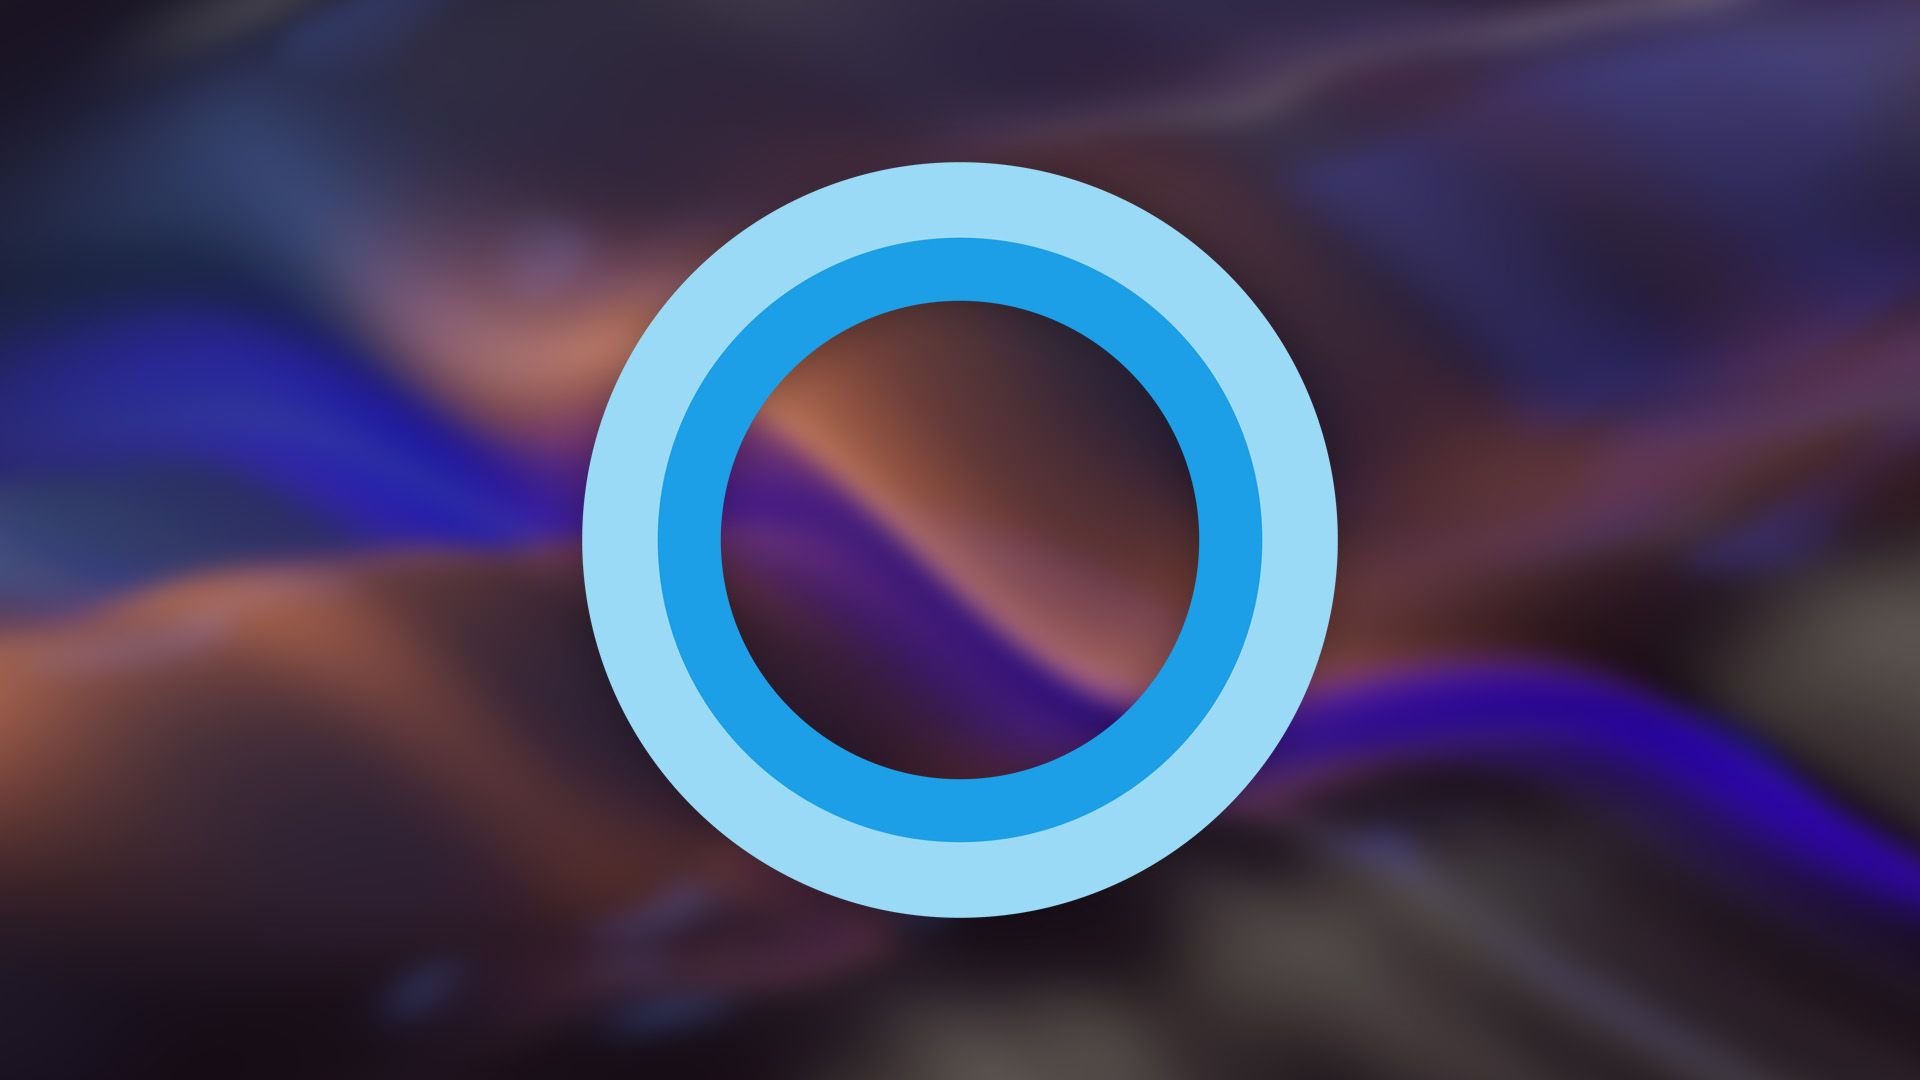 Cortana logo